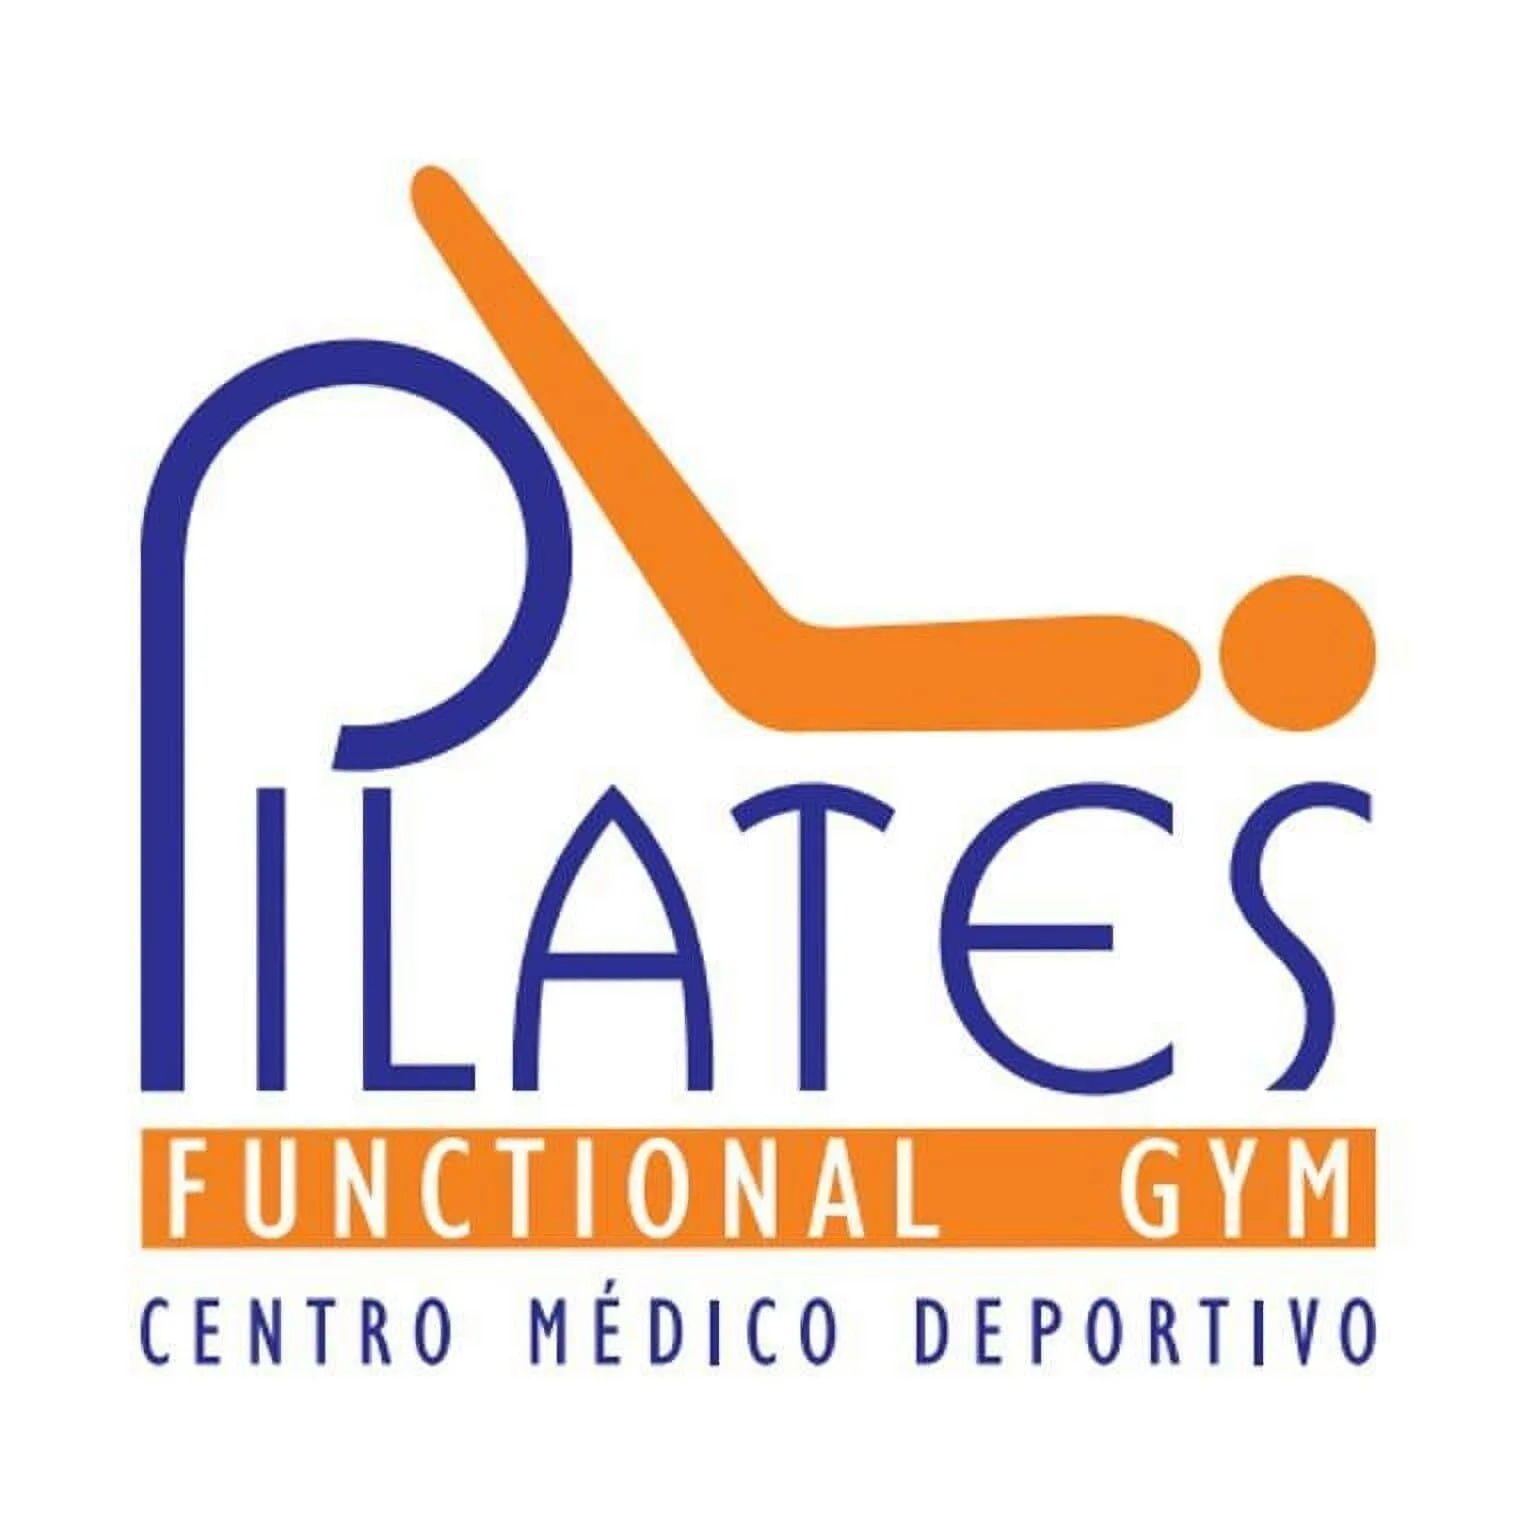 Pilates-pilates-functional-gym-sede-la-flora-7001